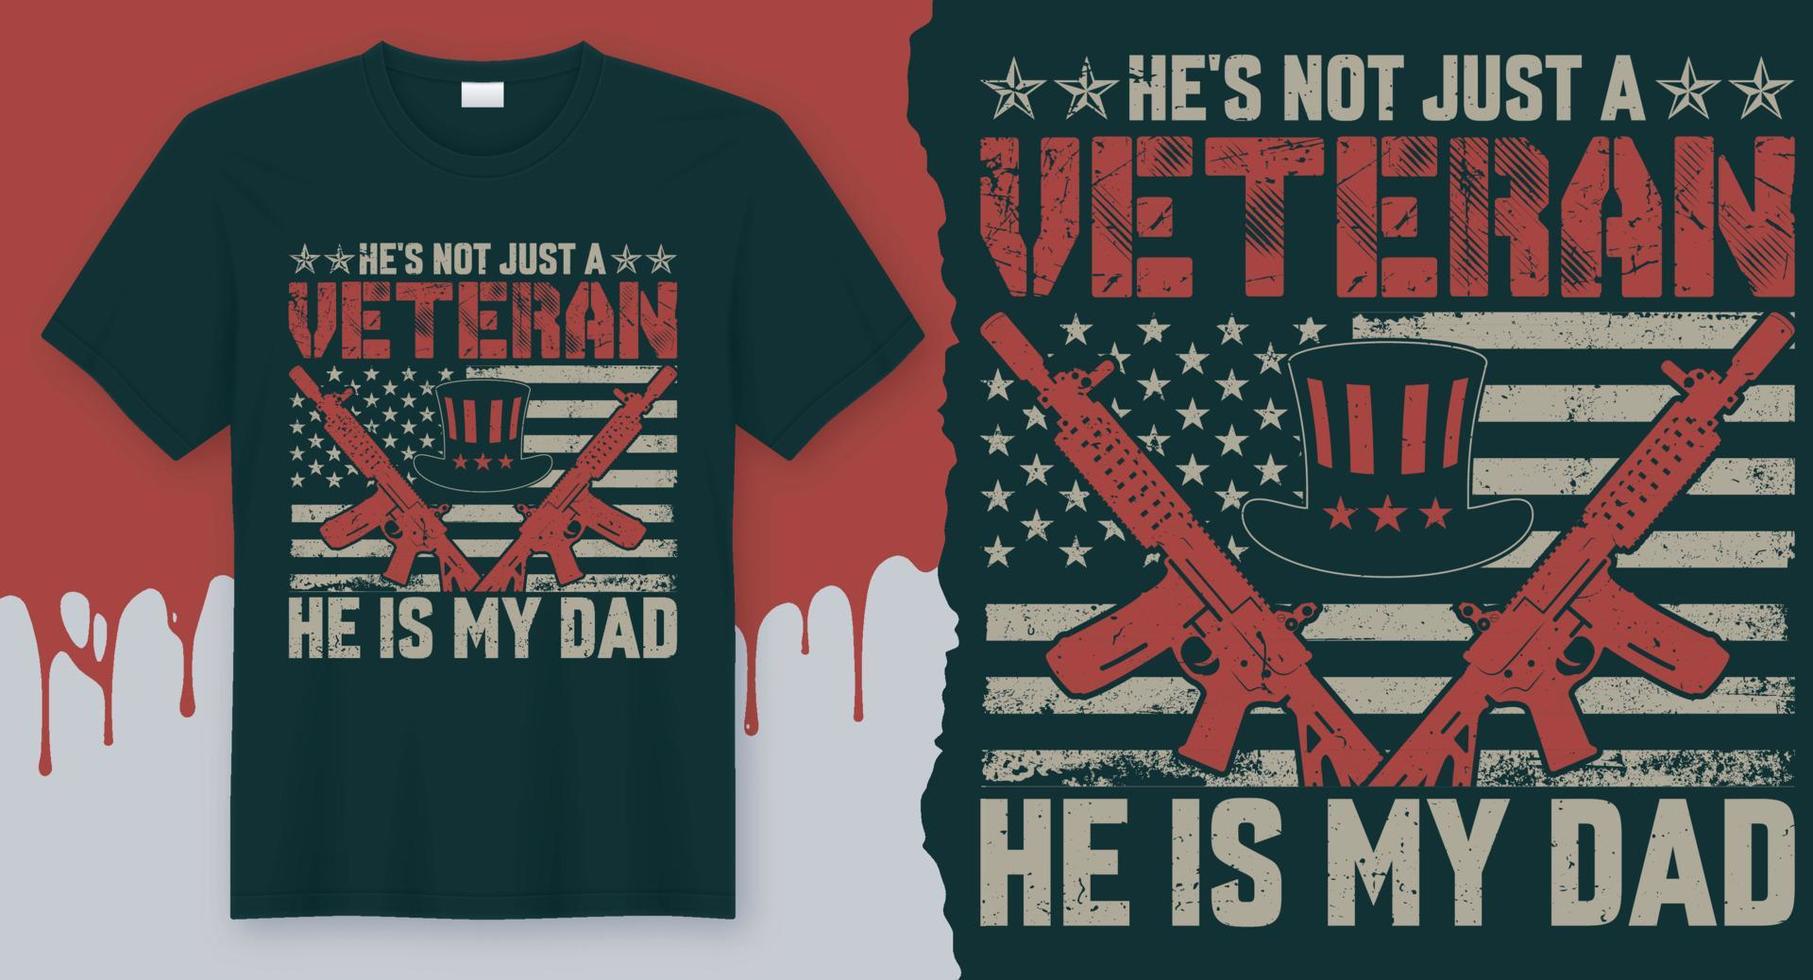 lui è non appena un' veterano lui è mio papà. veterano citazione maglietta design vettore